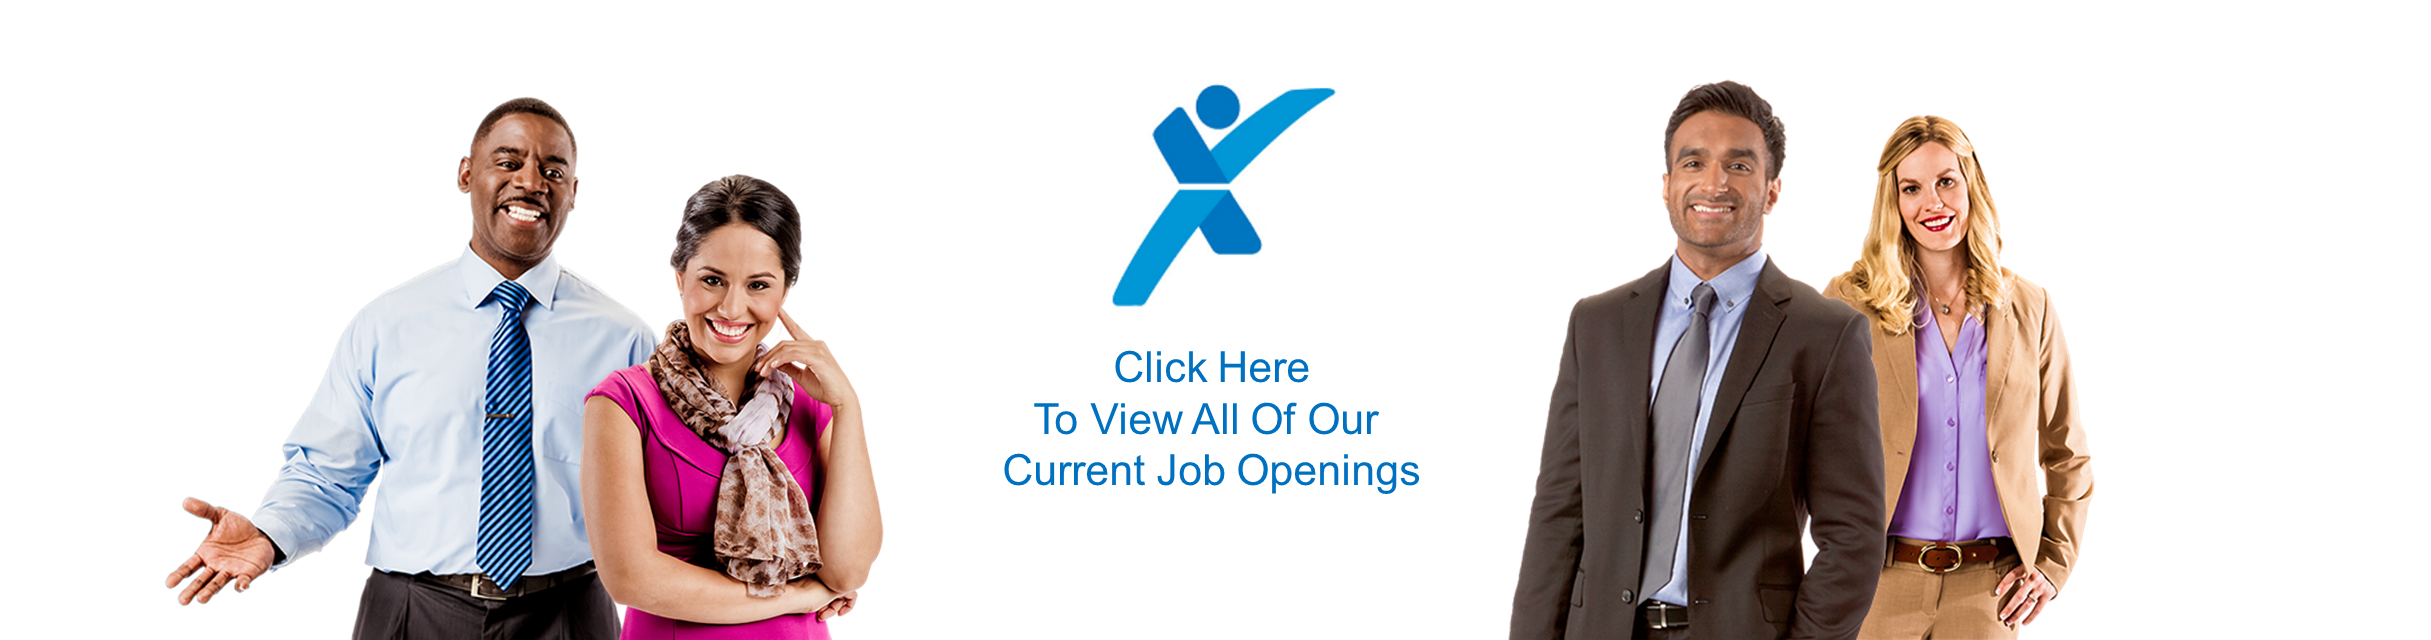 Open Jobs Microsite Banner